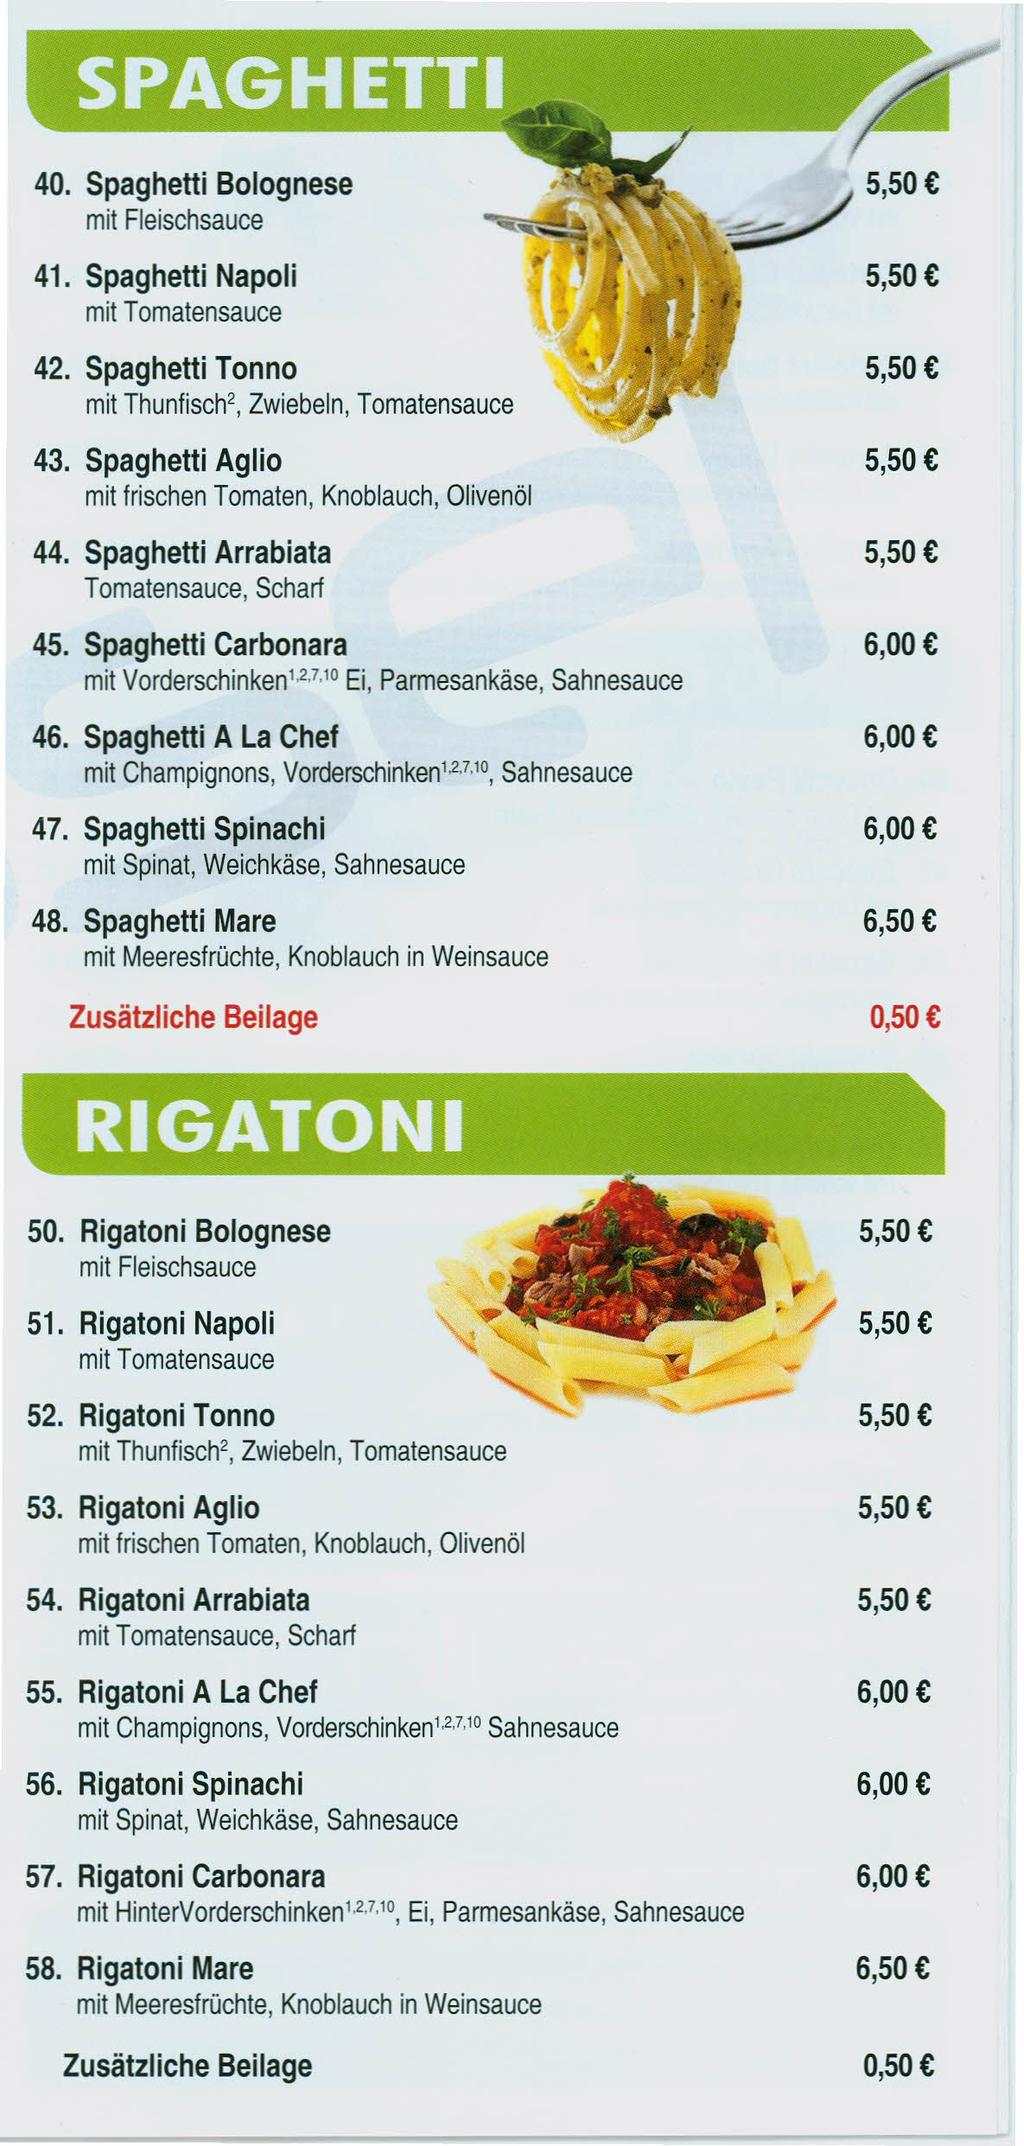 40. Spaghetti Bolognese mit Fleischsauce 41. Spaghetti Napoli mit Tomatensauce 42. Spaghetti Tonno mit Thunfisch', Zwiebeln, Tomatensauce 43.